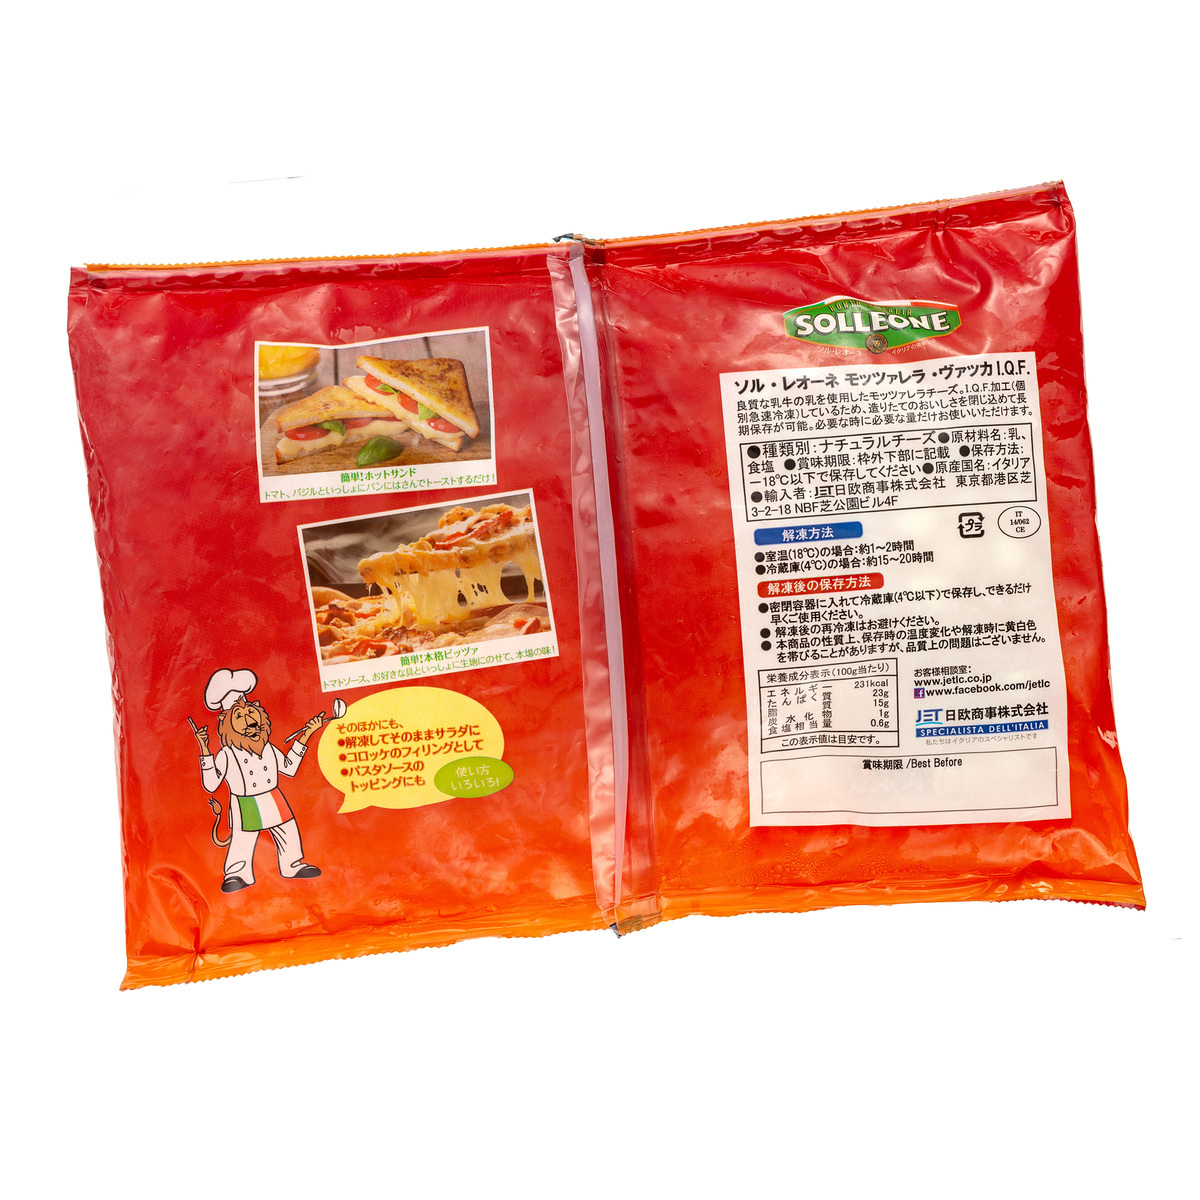 冷凍モッツァレラチーズ パール2gタイプ 1kg - QVC.jp